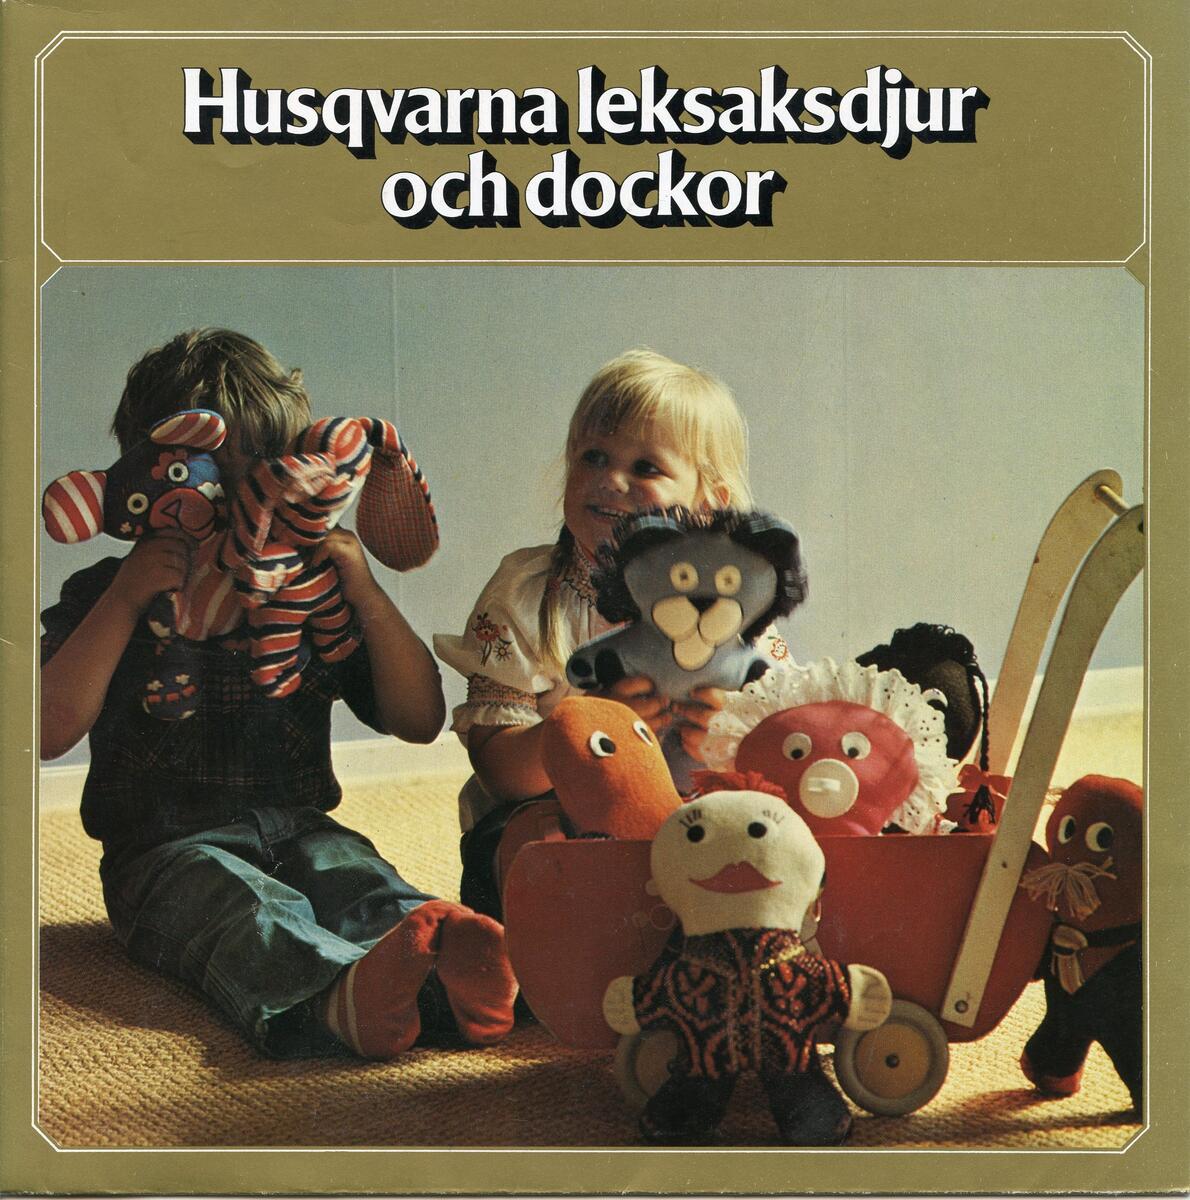 Mönsterhäfte, Husqvarna leksaksdjur och dockor. 1970-tal. Häftet viks tre gånger och innehåller mönster samt sömnadsbeskrivningar för diverse olika mjukdjur och dockor. Guldfärgat omslag med en bild på framsidan föreställande två barn som leker med mjukdjur samt texten "Husqvarna leksaksdjur och dockor". På baksidan en bild samt texten "Husqvarna leksakskuddar". Tidningen har använts i utställningen "1900-talets rum". Från Violet Bergdahls samling.